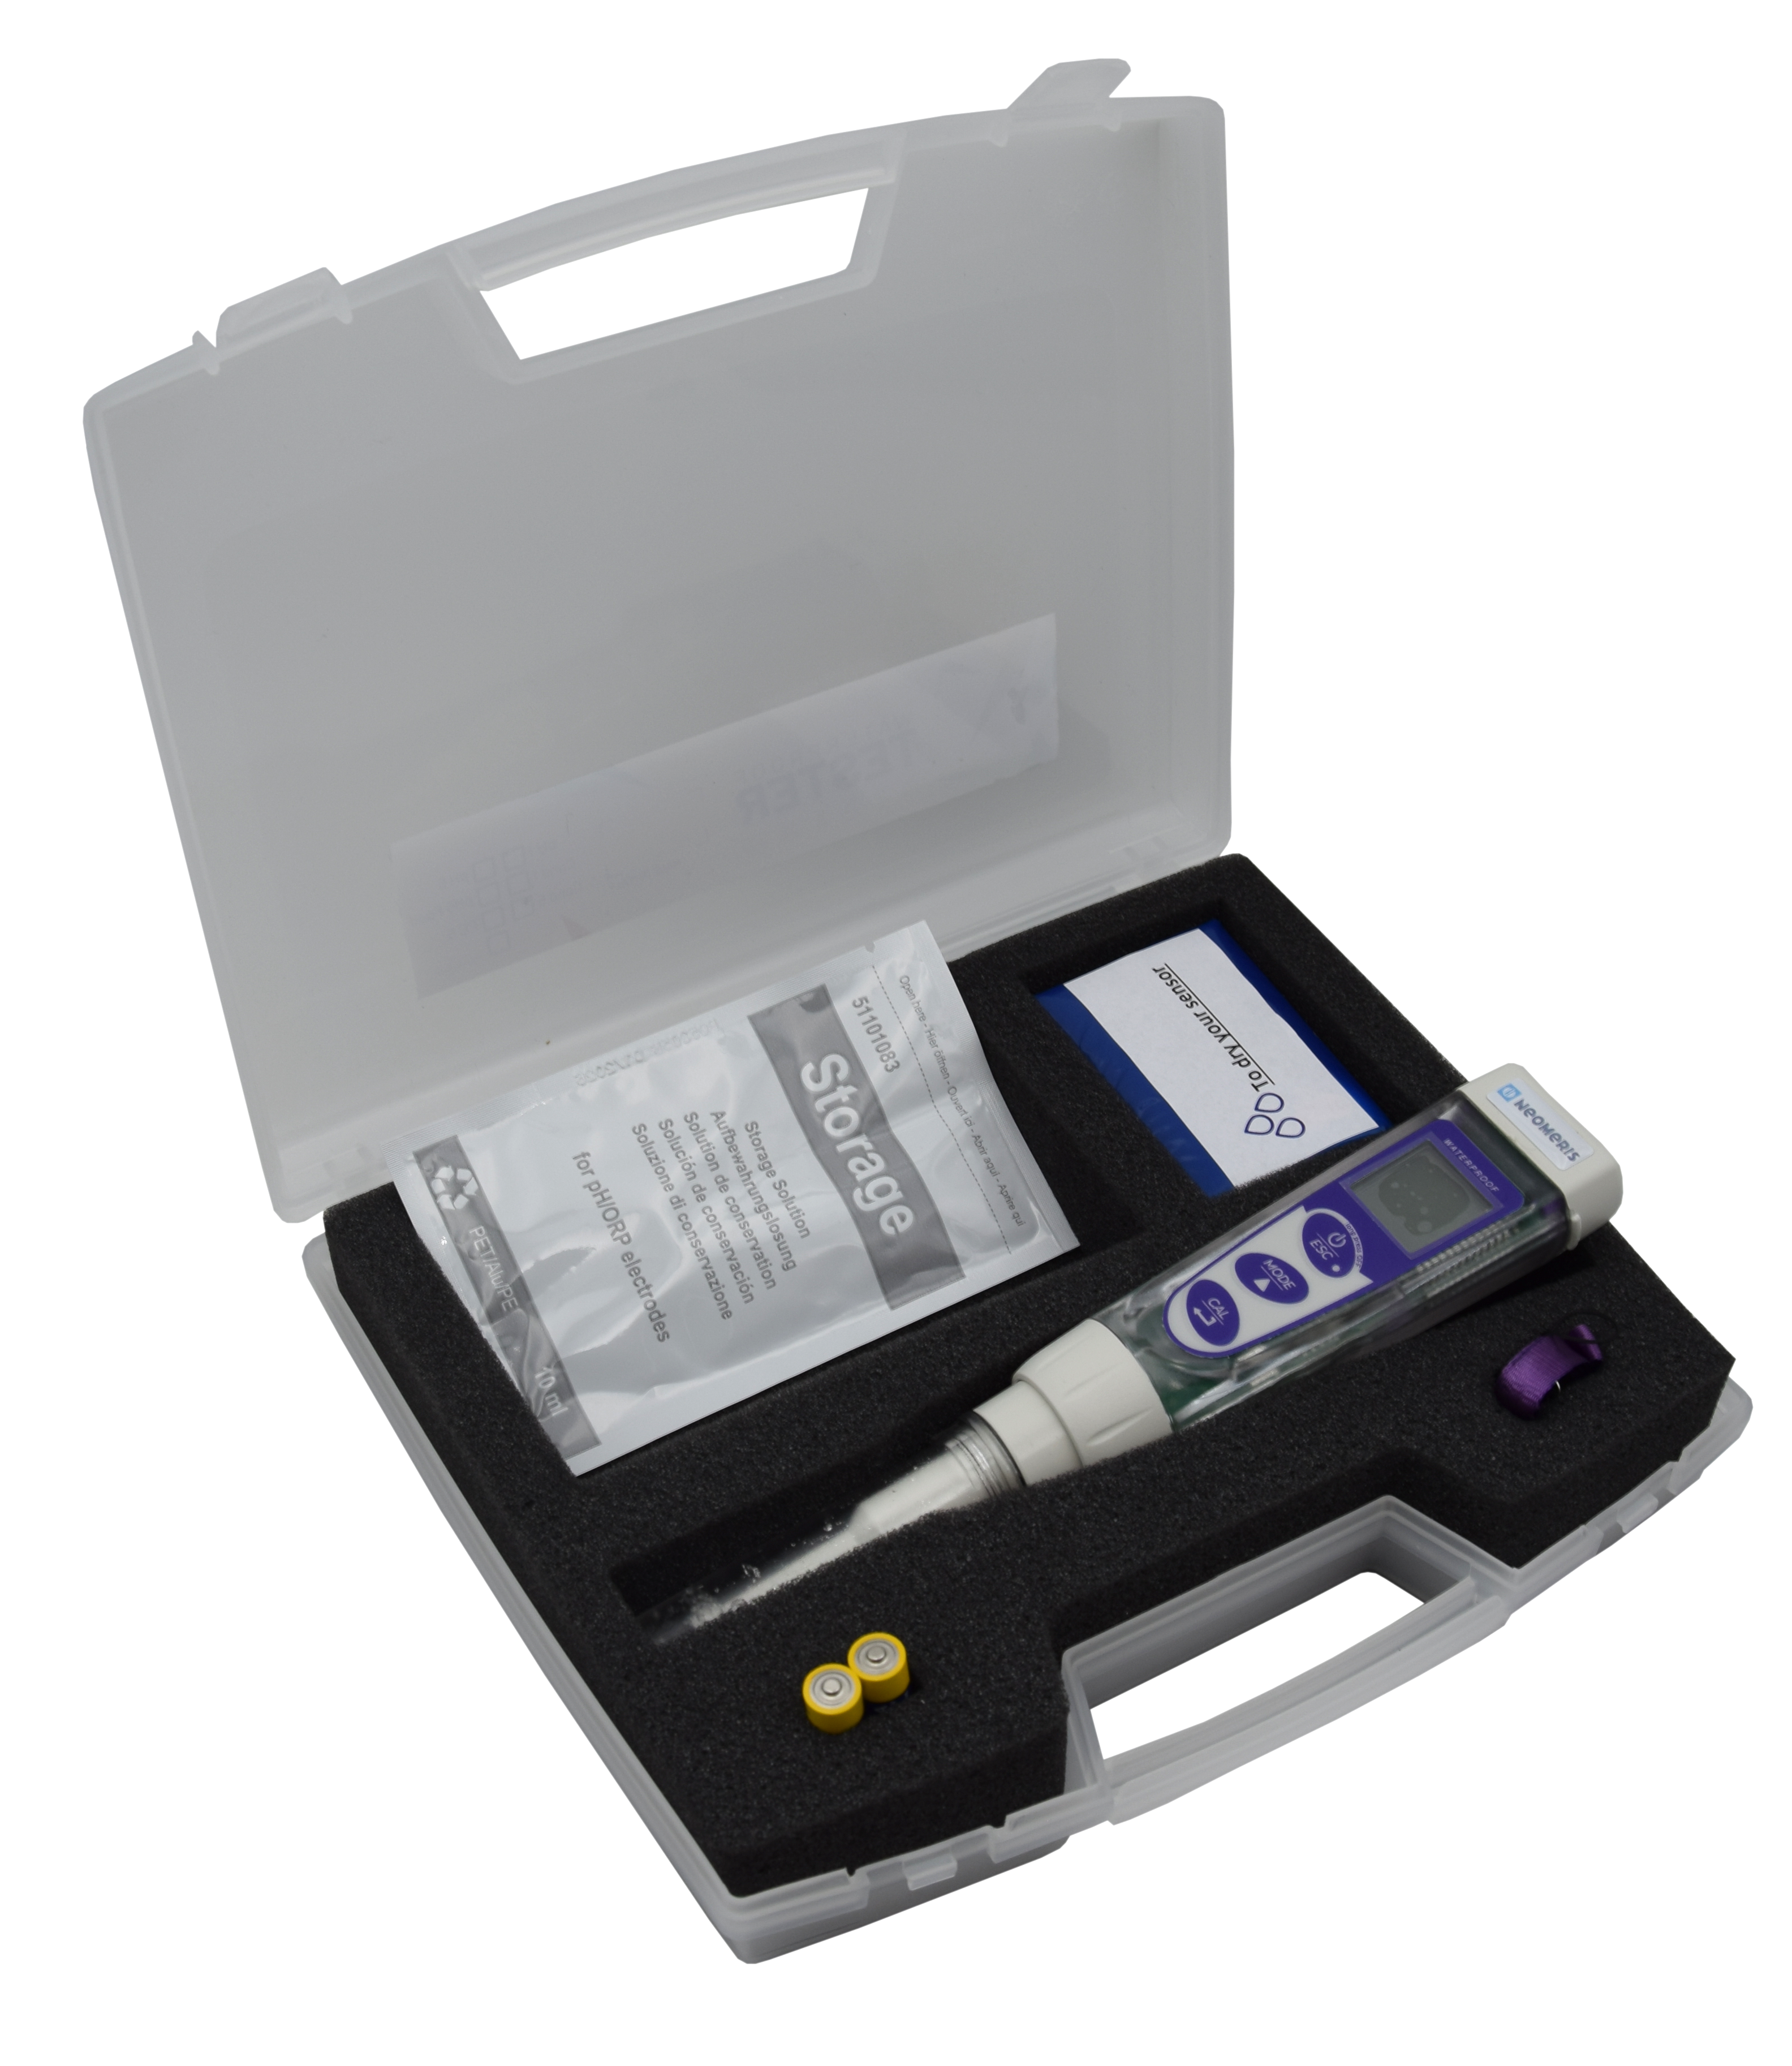 Basic pH 5 FOOD pocket tester in measuring case - Foodstuffs Pocket Tester for pH/mV/Temperature measurement